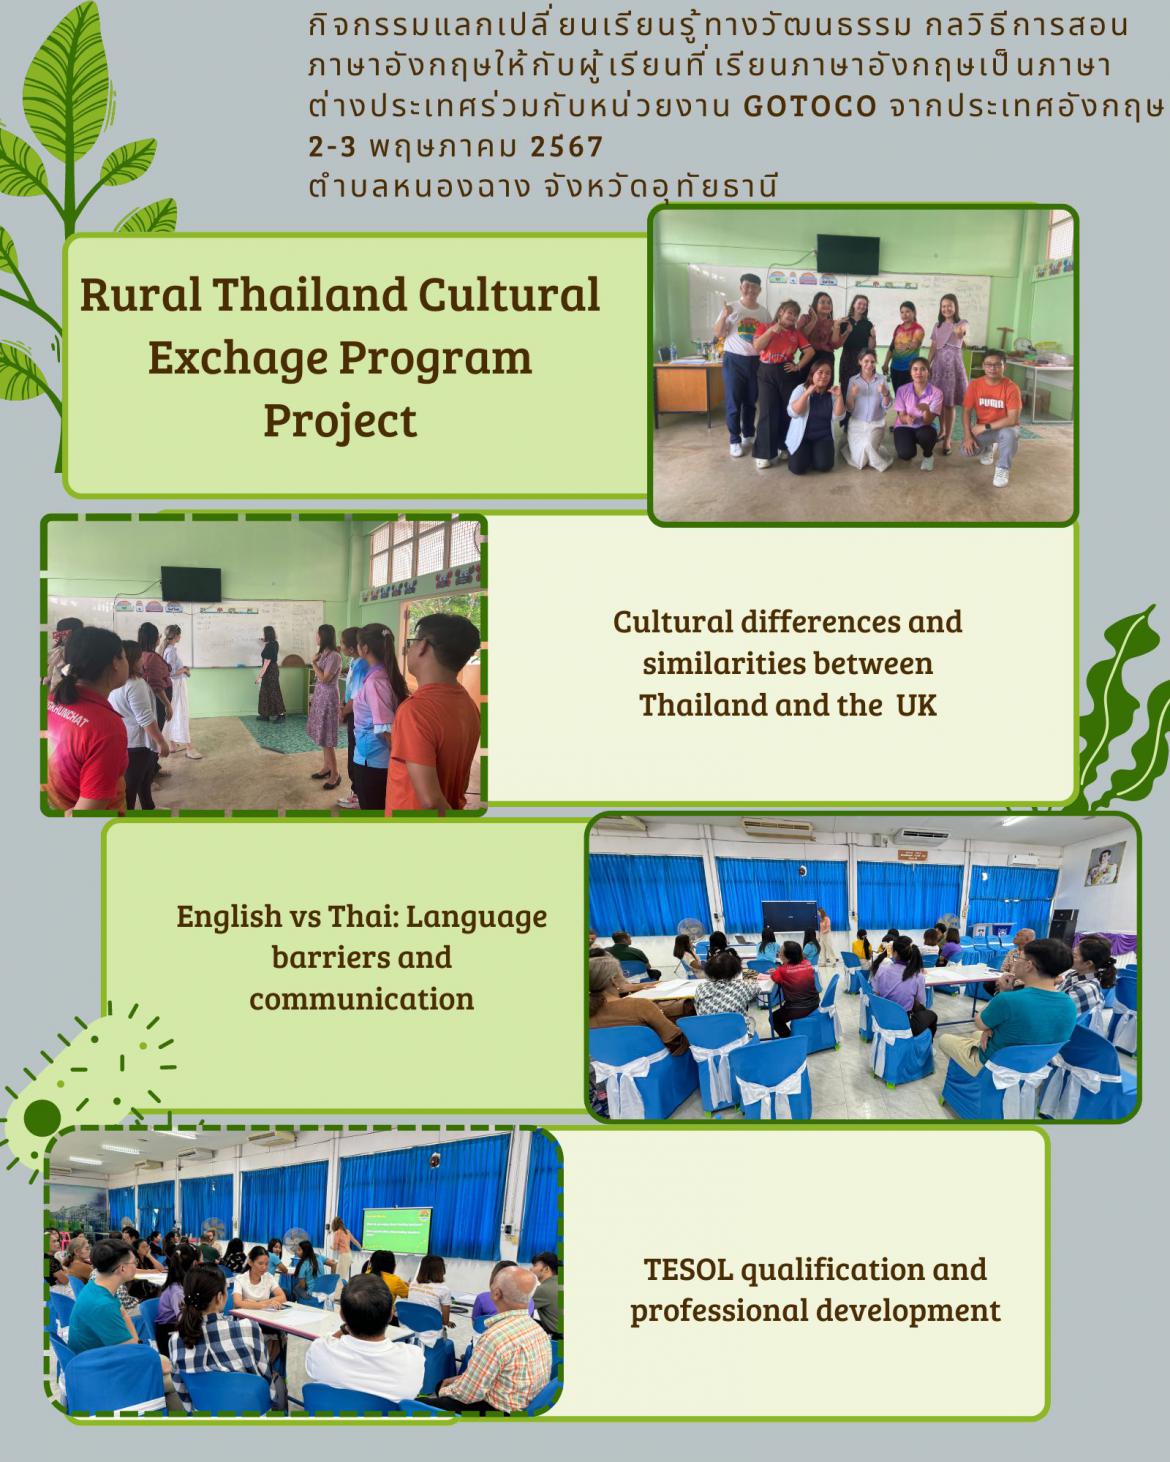 กิจกรรมแลกเปลี่ยนเรียนรู้ทางวัฒนธรรม กลวิธีการสอนภาษาอังกฤษให้กับผู้เรียนที่เรียนภาษาอังกฤษเป็นภาษาต่างประเทศ